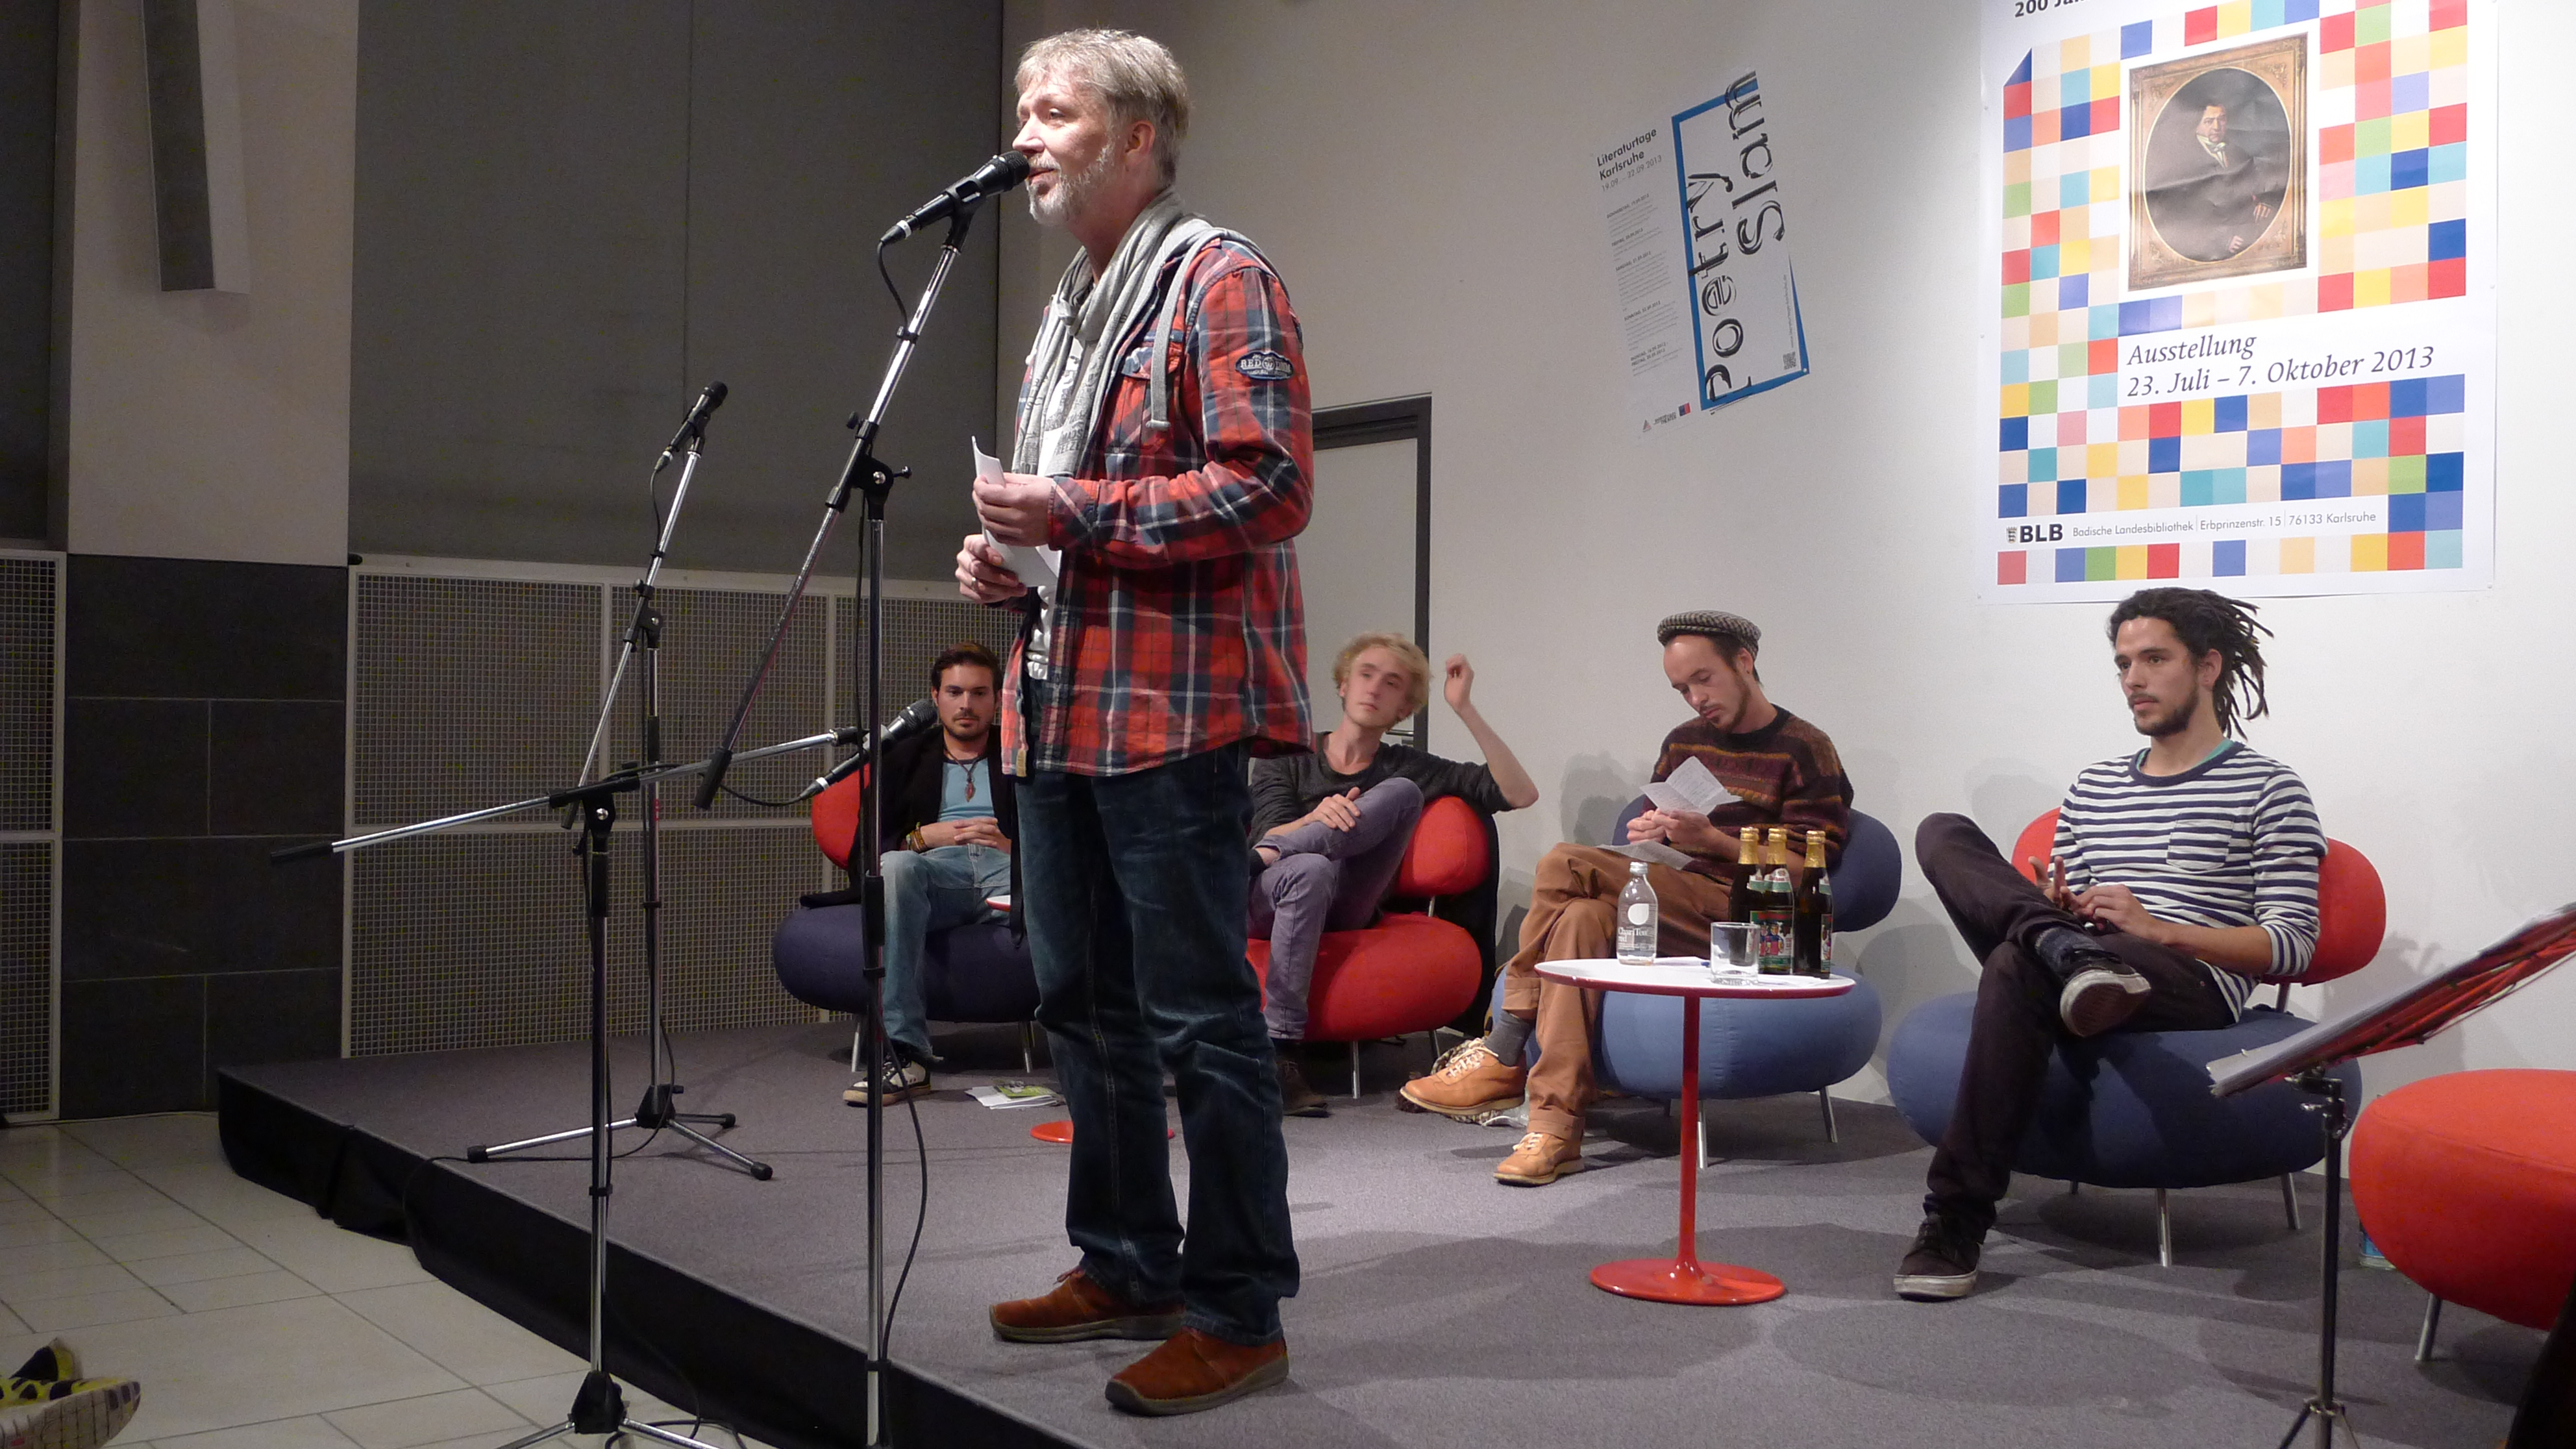 Das Foto zeigt die Eröffnungsveranstaltung der Literaturtage 2013 mit den Slam-Poeten Stefan Unser (stehend) und sitzend von links nach rechts Daniel Wagner, Tobias Gralke, Maurice Meijer und Aaron Schmidt.